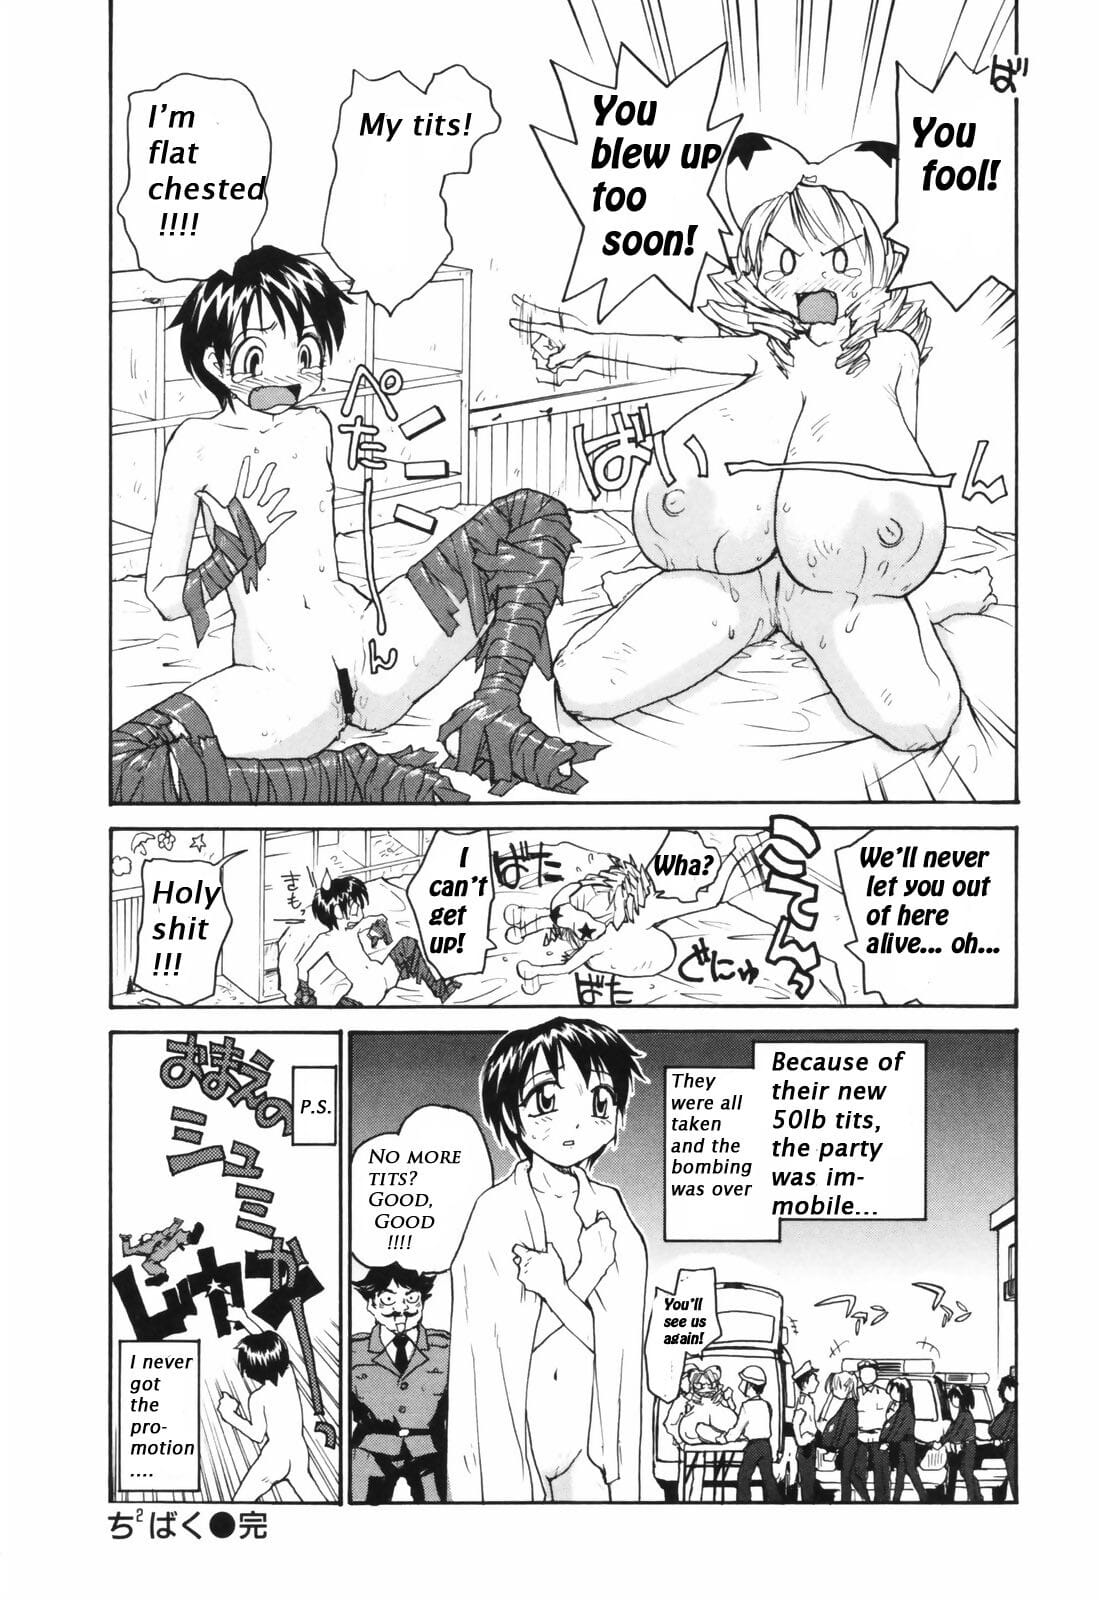 Chichi bakoe Chichi bomber boobicide een lekker wijf page 1